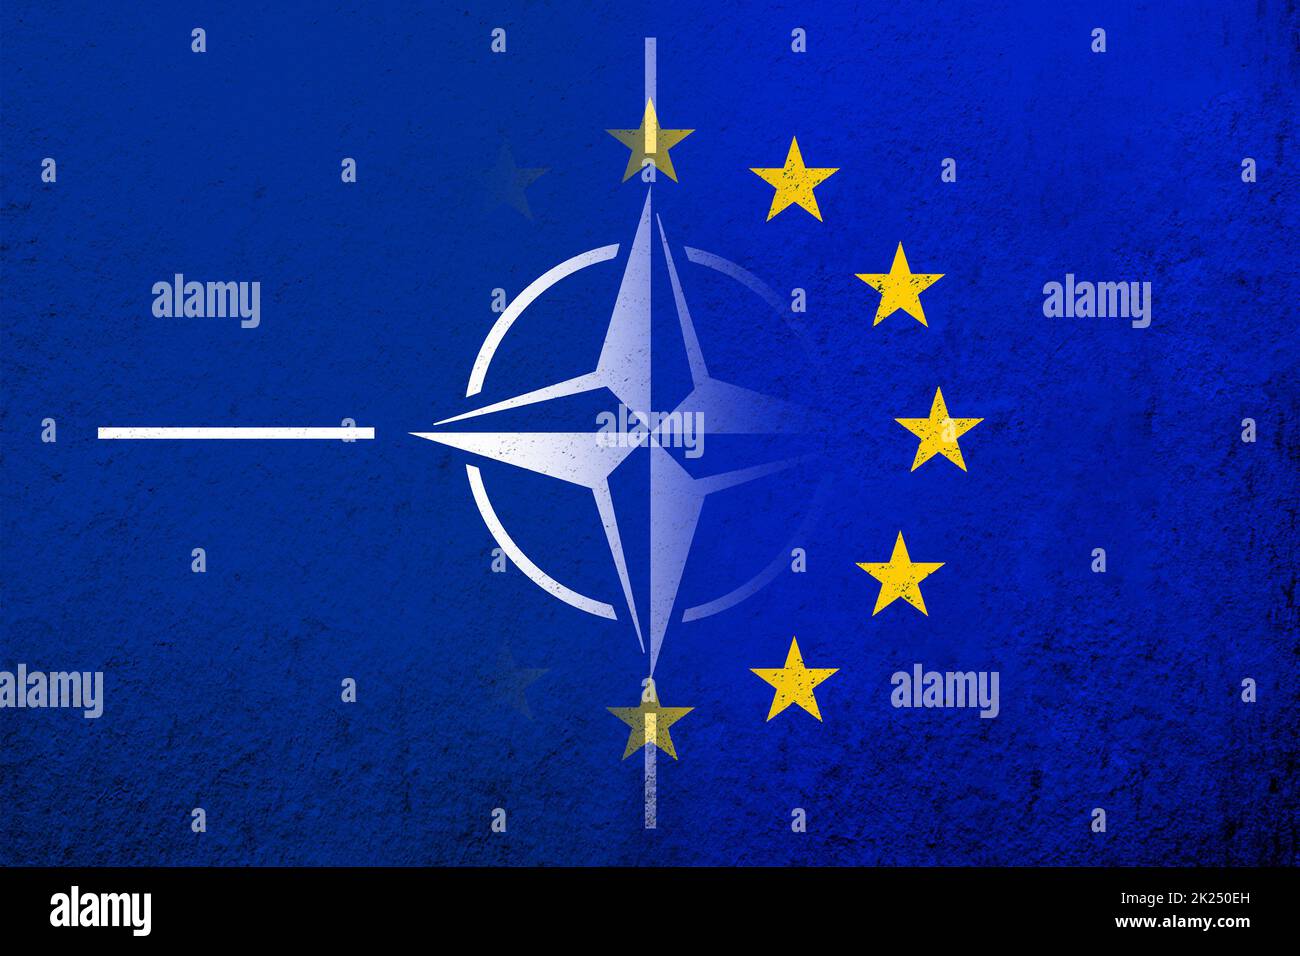 Flagge der Europäischen Union mit Flagge der NATO des Nordatlantikbündnisses. Grungen Hintergrund Stockfoto